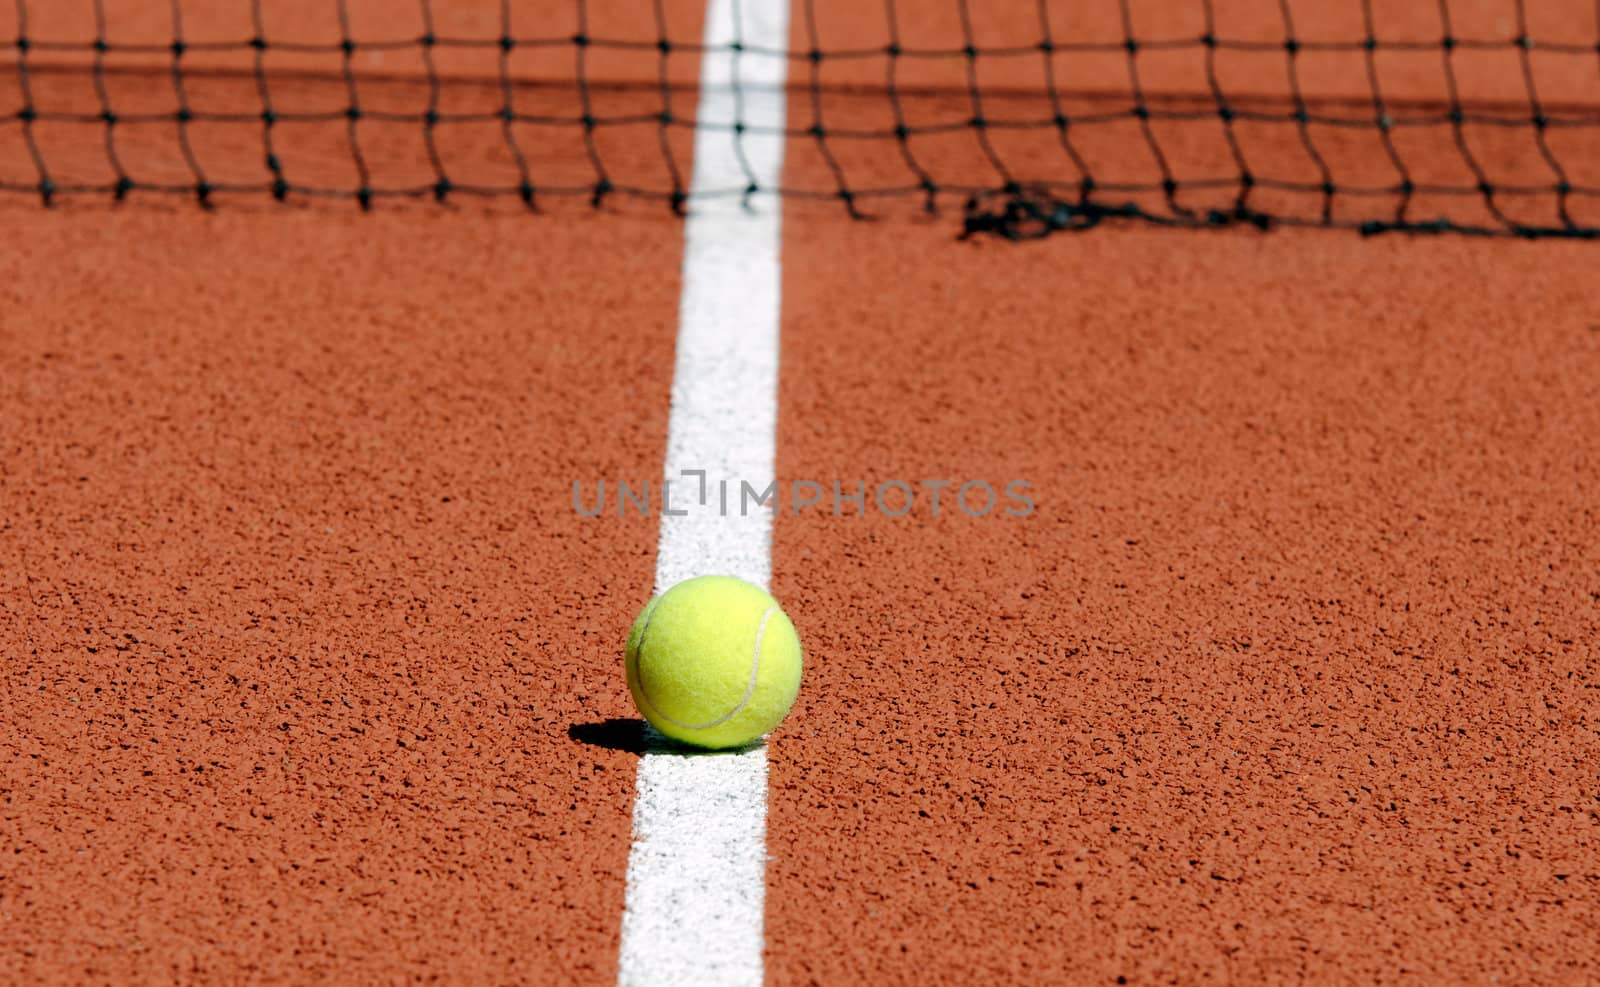 Tennis ball on a tennis court
